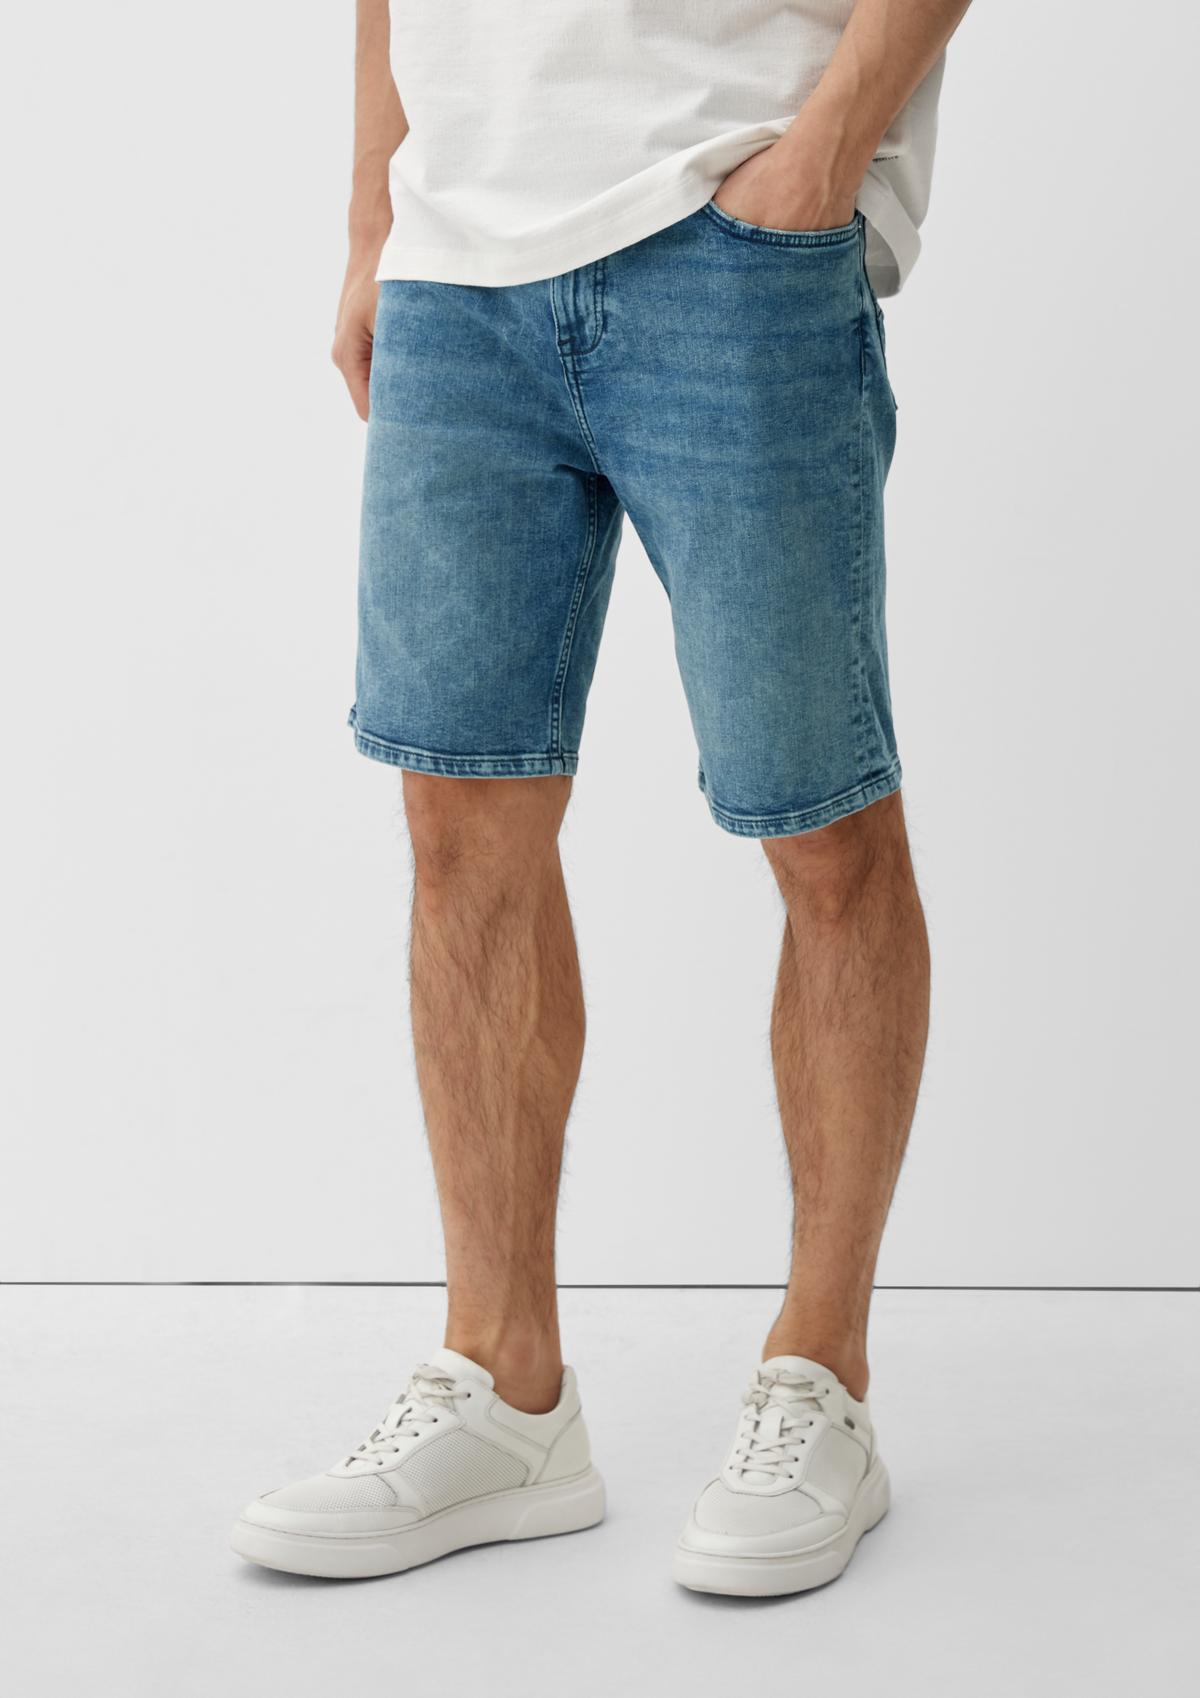 Slim : jean de style 5 poches